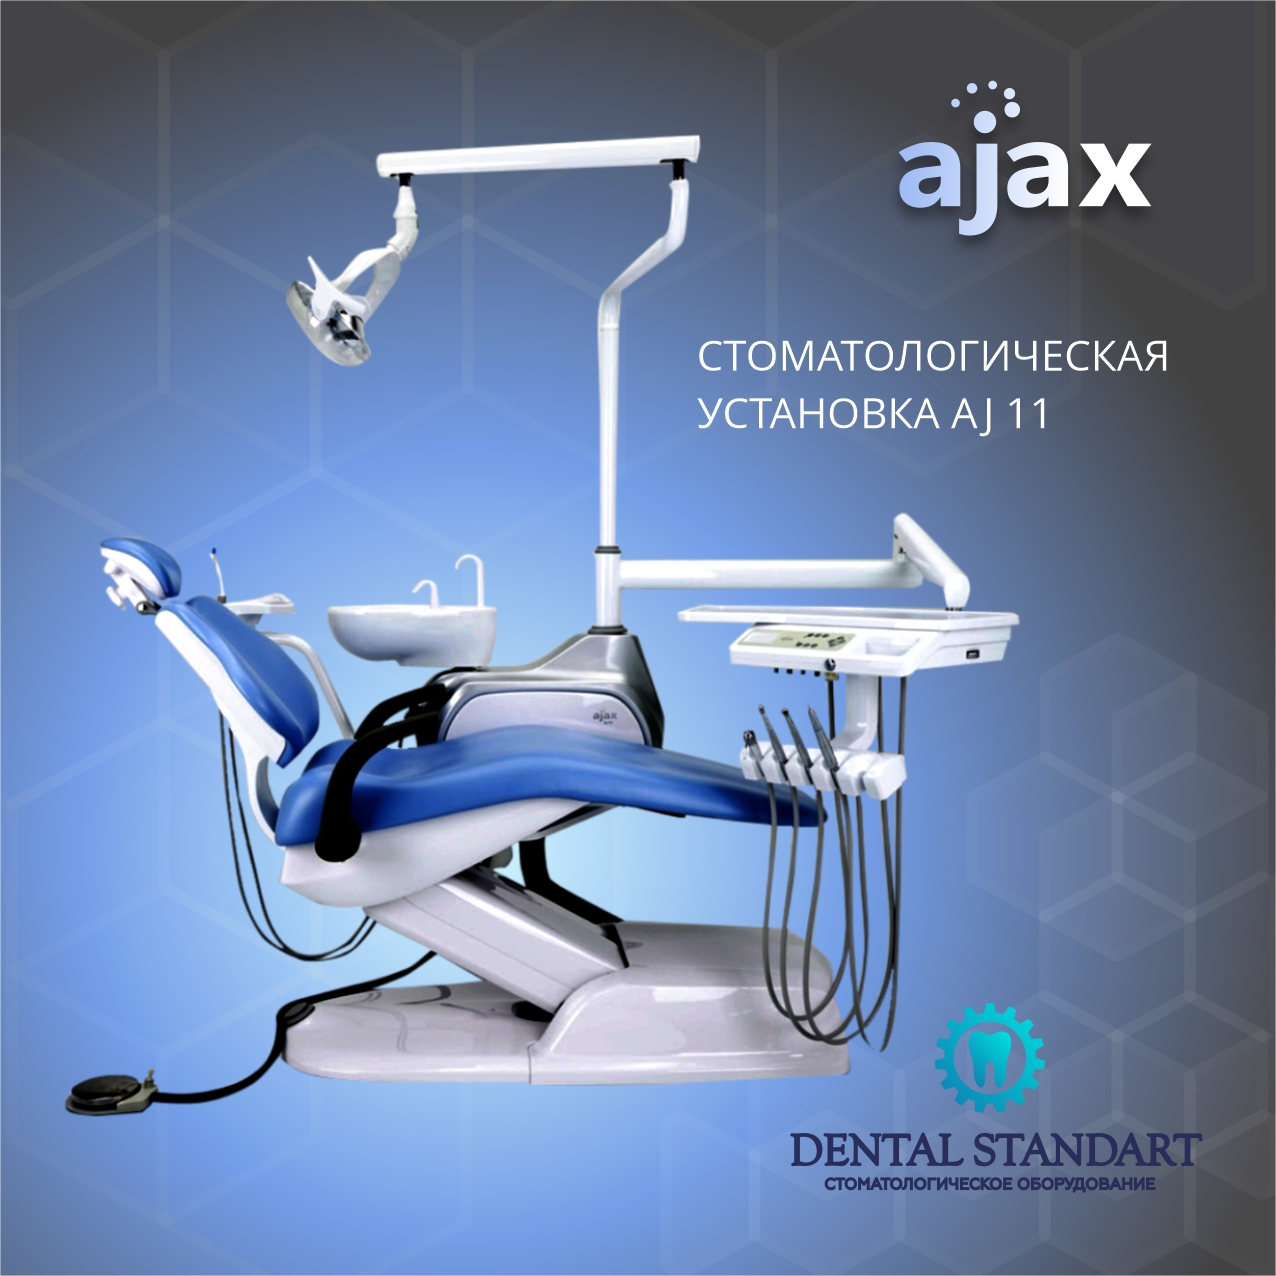 Стоматологическая установка ajax 11